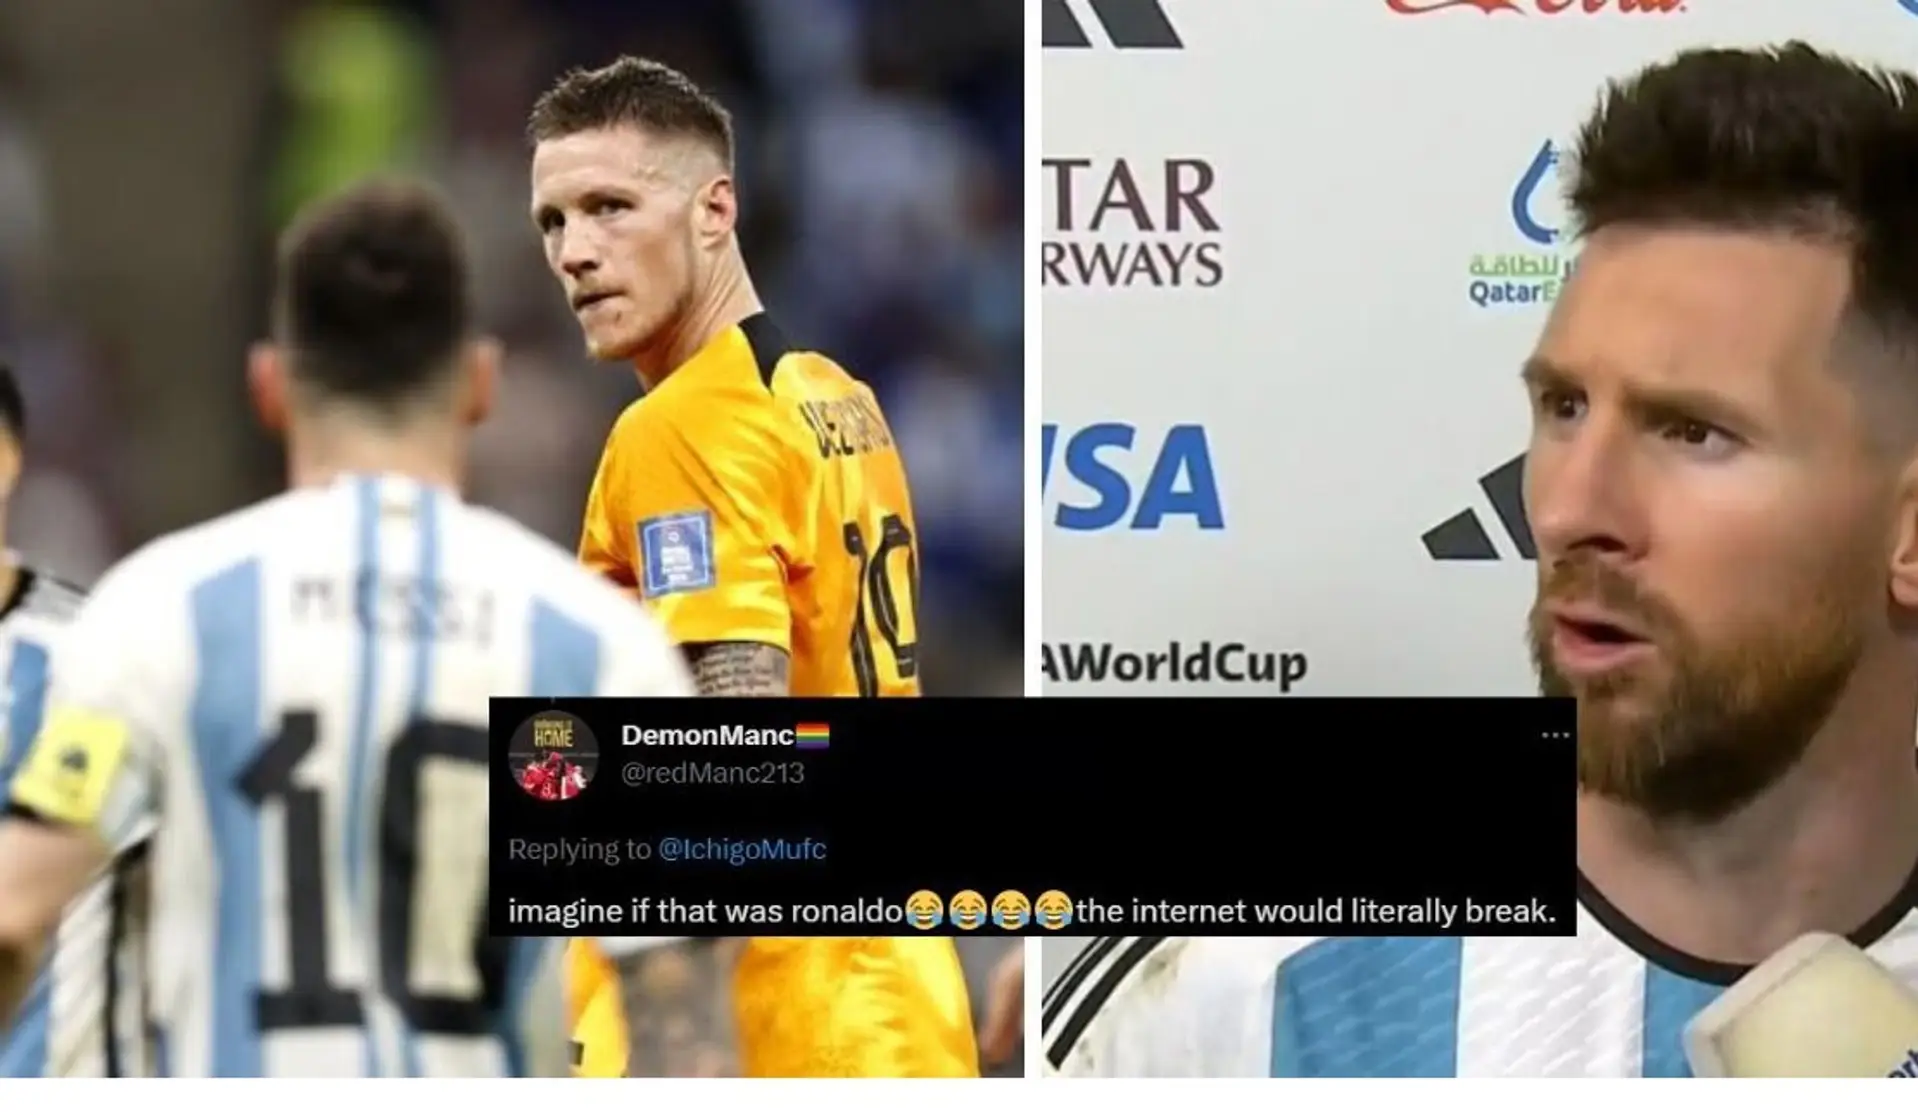 📹 "Stell dir vor, es wäre Ronaldo gewesen" - das volle Video des Konflikts zwischen Lionel Messi und Wout Weghorst bei der WM ist aufgetaucht